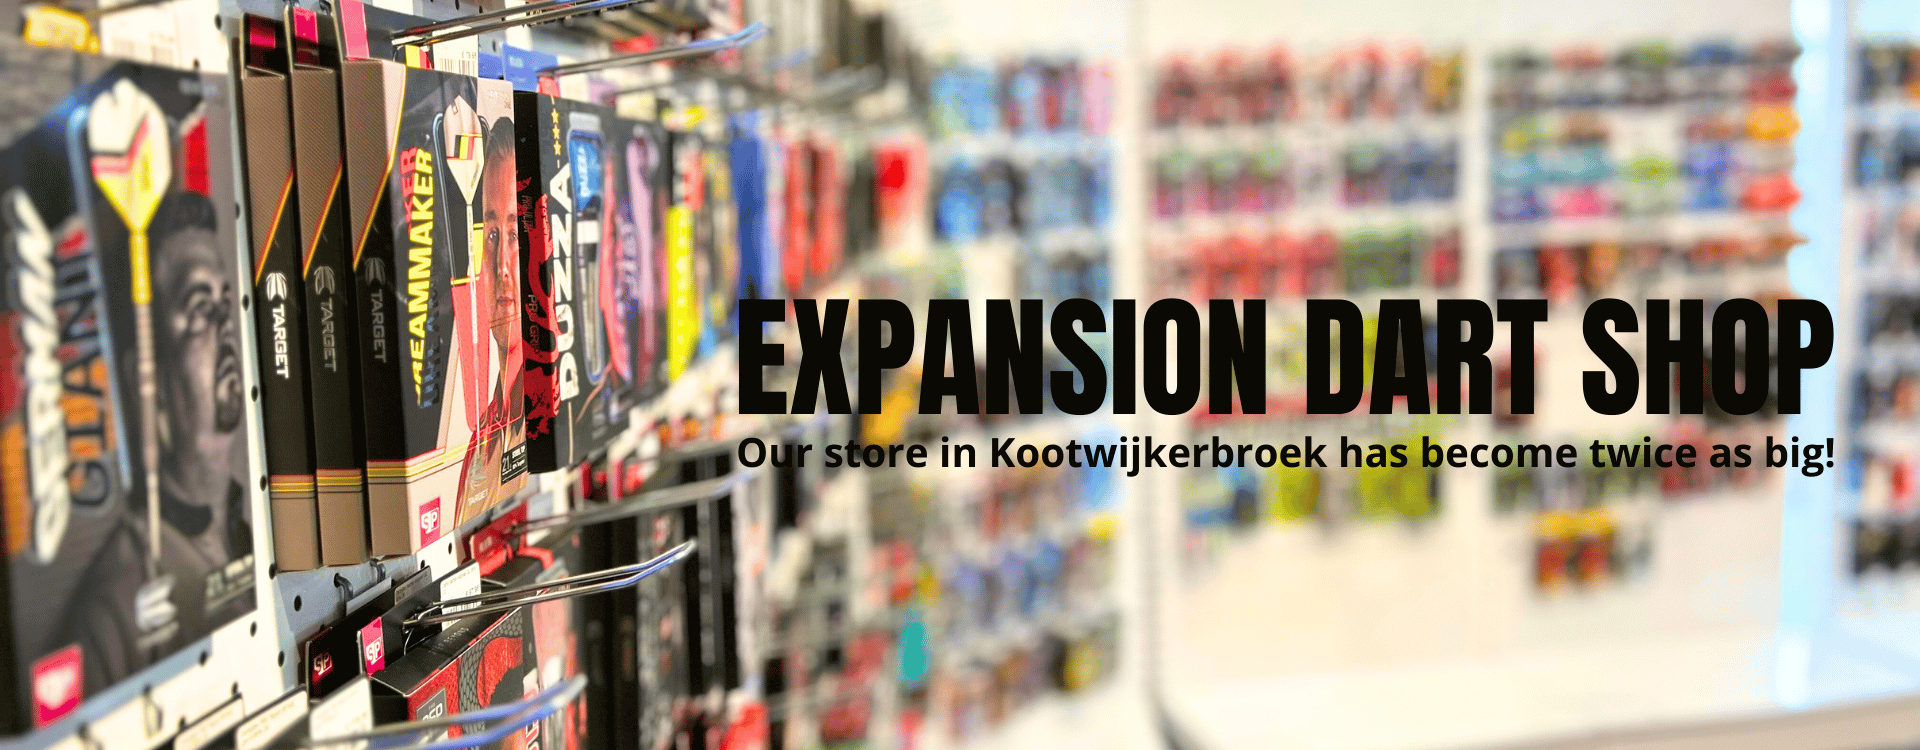 Expansion of dart shop in Kootwijkerbroek